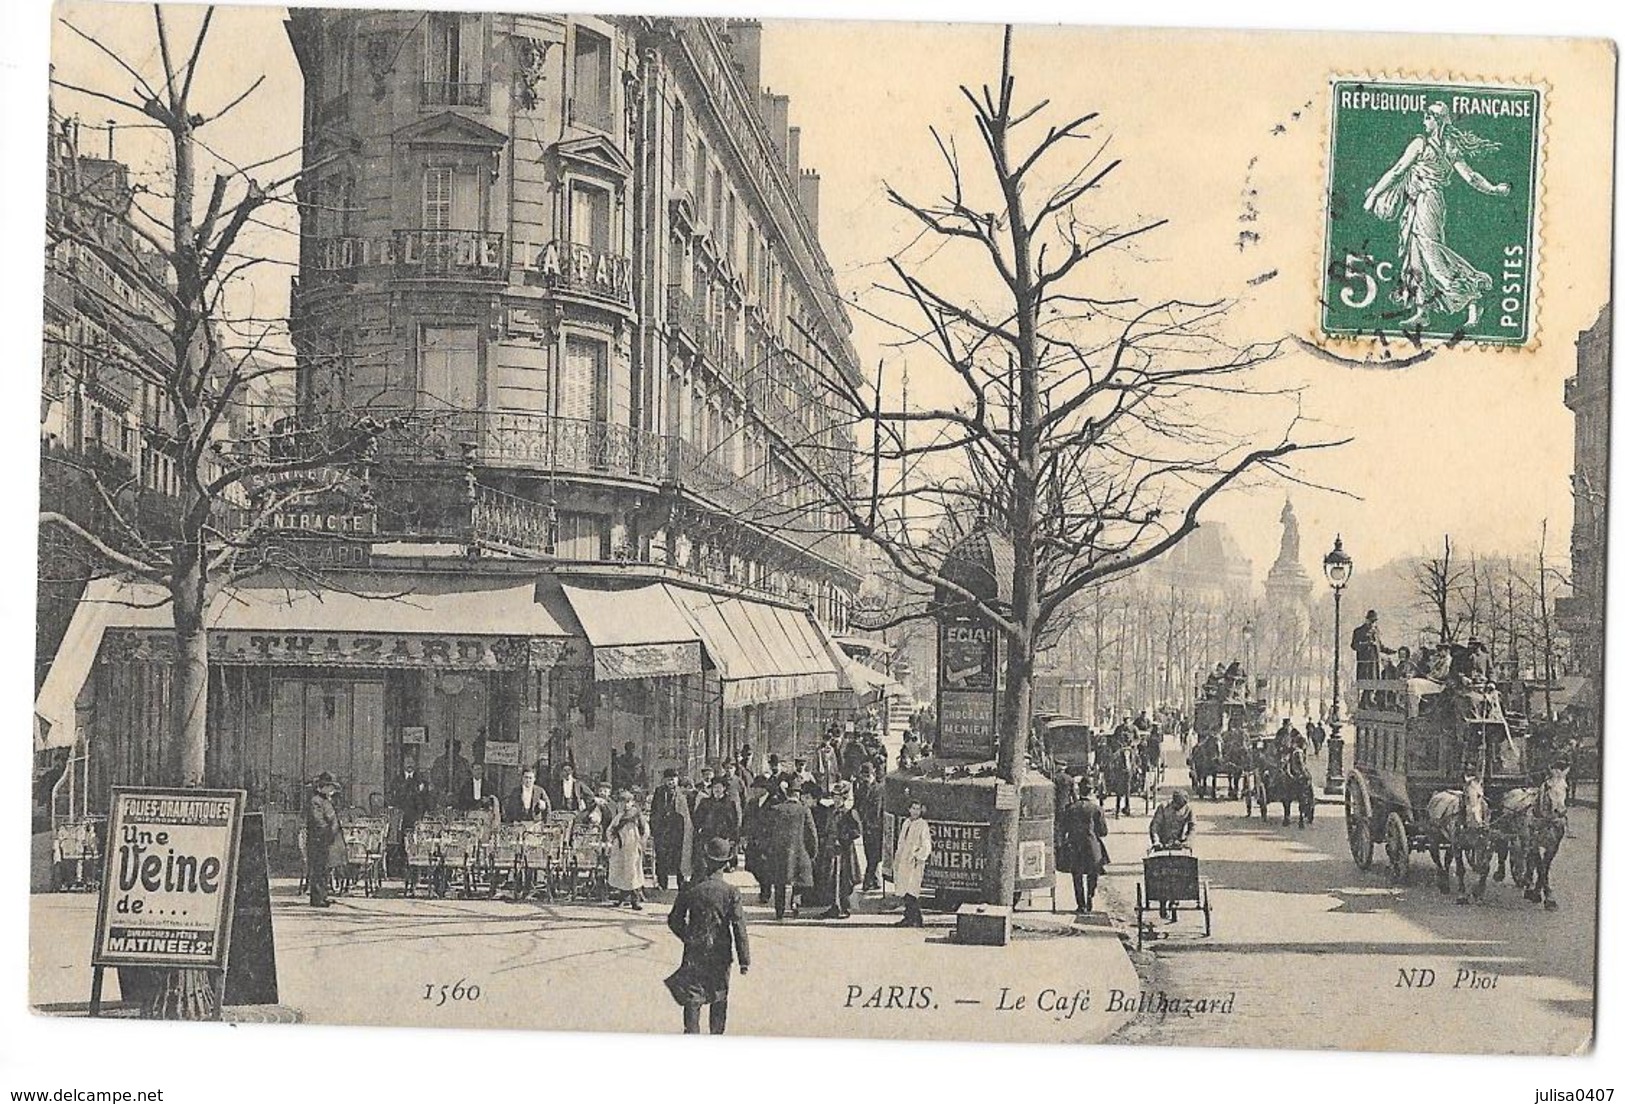 PARIS (75) Café Balthazard Boulevard Belle Animation - Cafés, Hotels, Restaurants